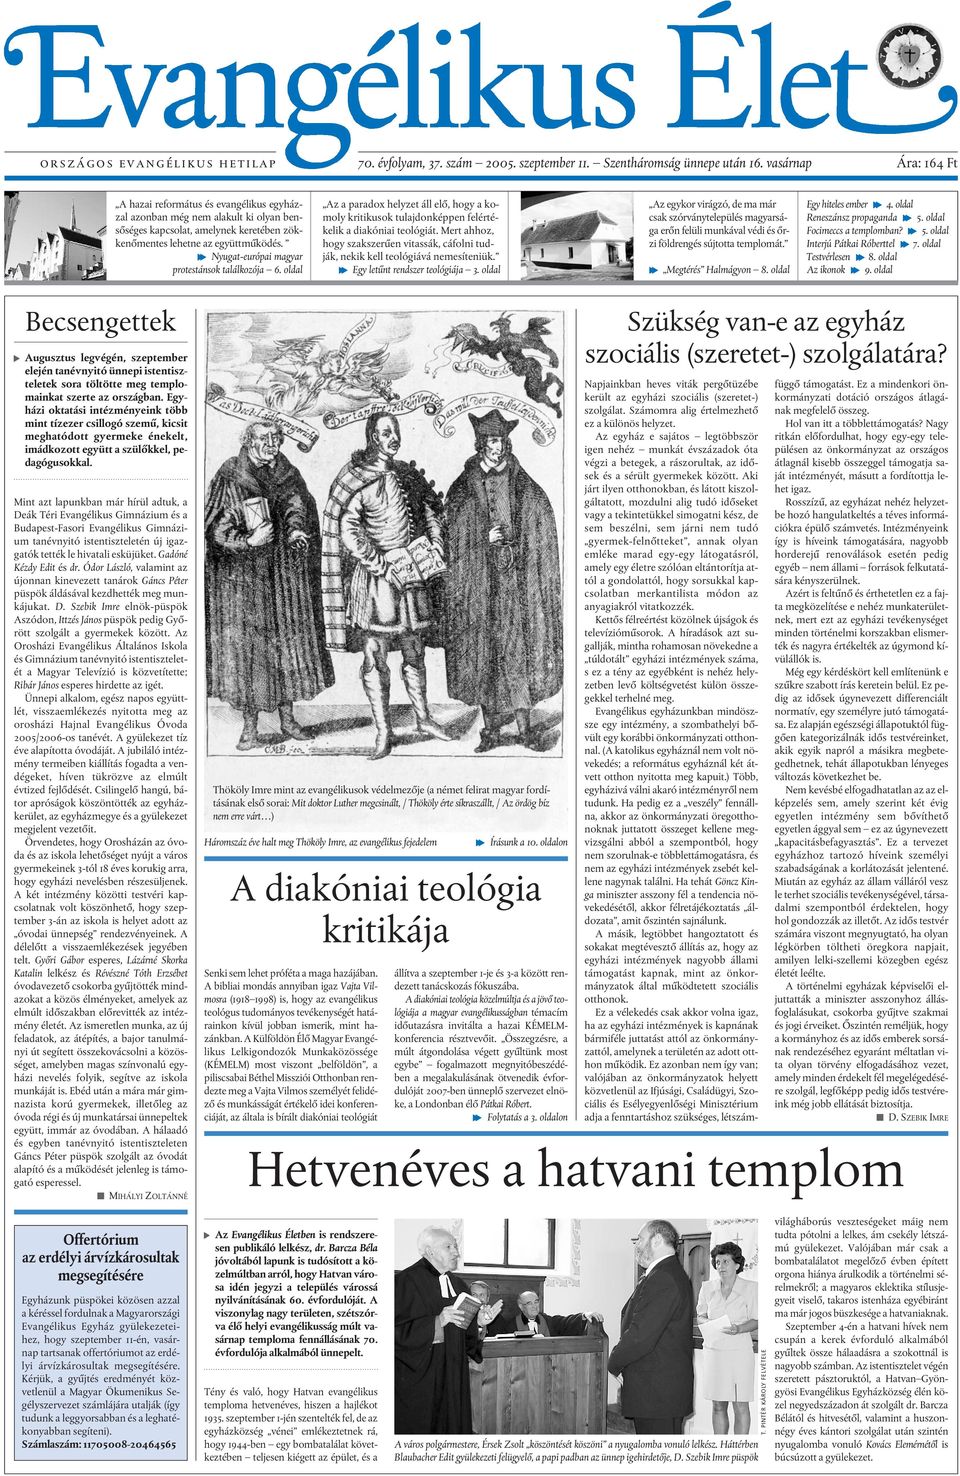 f Nyugat-európai magyar protestánsok találkozója 6. oldal Az a paradox helyzet áll elõ, hogy a komoly kritikusok tulajdonképpen felértékelik a diakóniai teológiát.